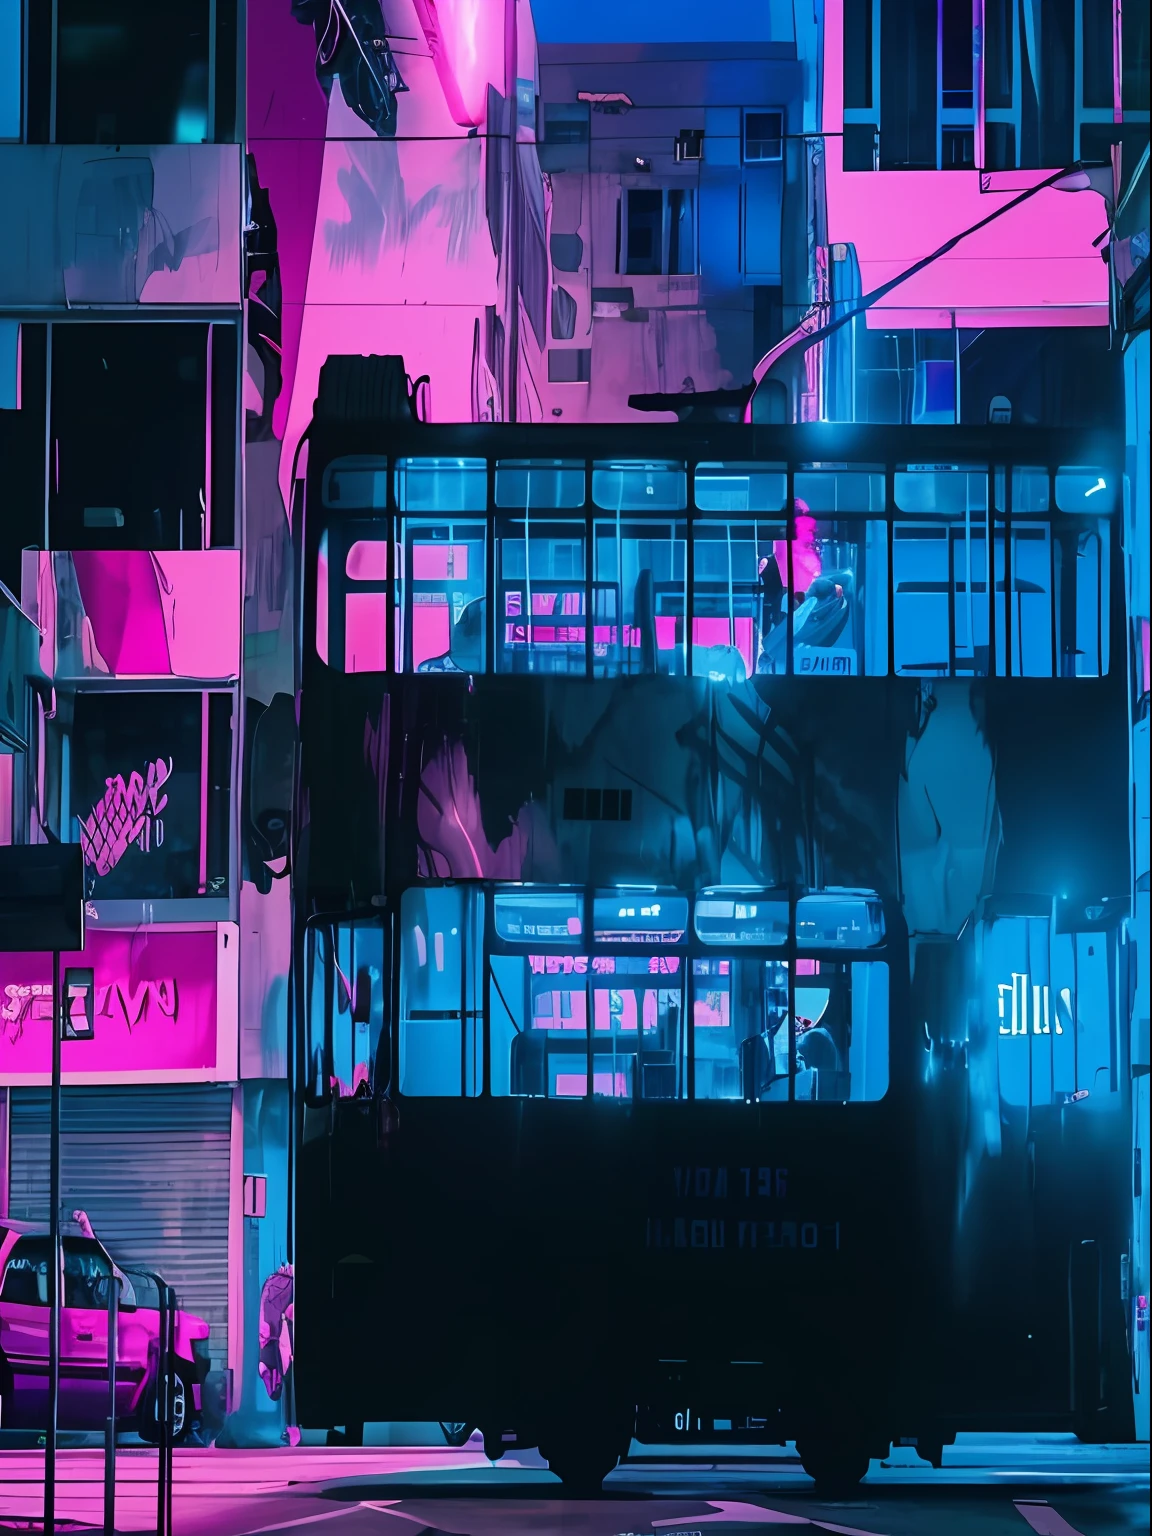 Autobús Alafed de dos pisos en las calles de la ciudad por la noche, estética de onda sintetizada, estética ciberpunk, estética ciberpunk, Ola Sintética Miami, ambiente ciberpunk, en estética cyberpunk, ciberpunk estético, Estética de neón, vibraciones de Blade Runner, atmósfera ciberpunk, Parada de autobús cyberpunk, colores ciberpunk coloridos de ensueño, estilo cyberpunk apagado, Estilo de iluminación de ondas de vapor, estética de ondas de vapor, onda de vapor ciberpunk